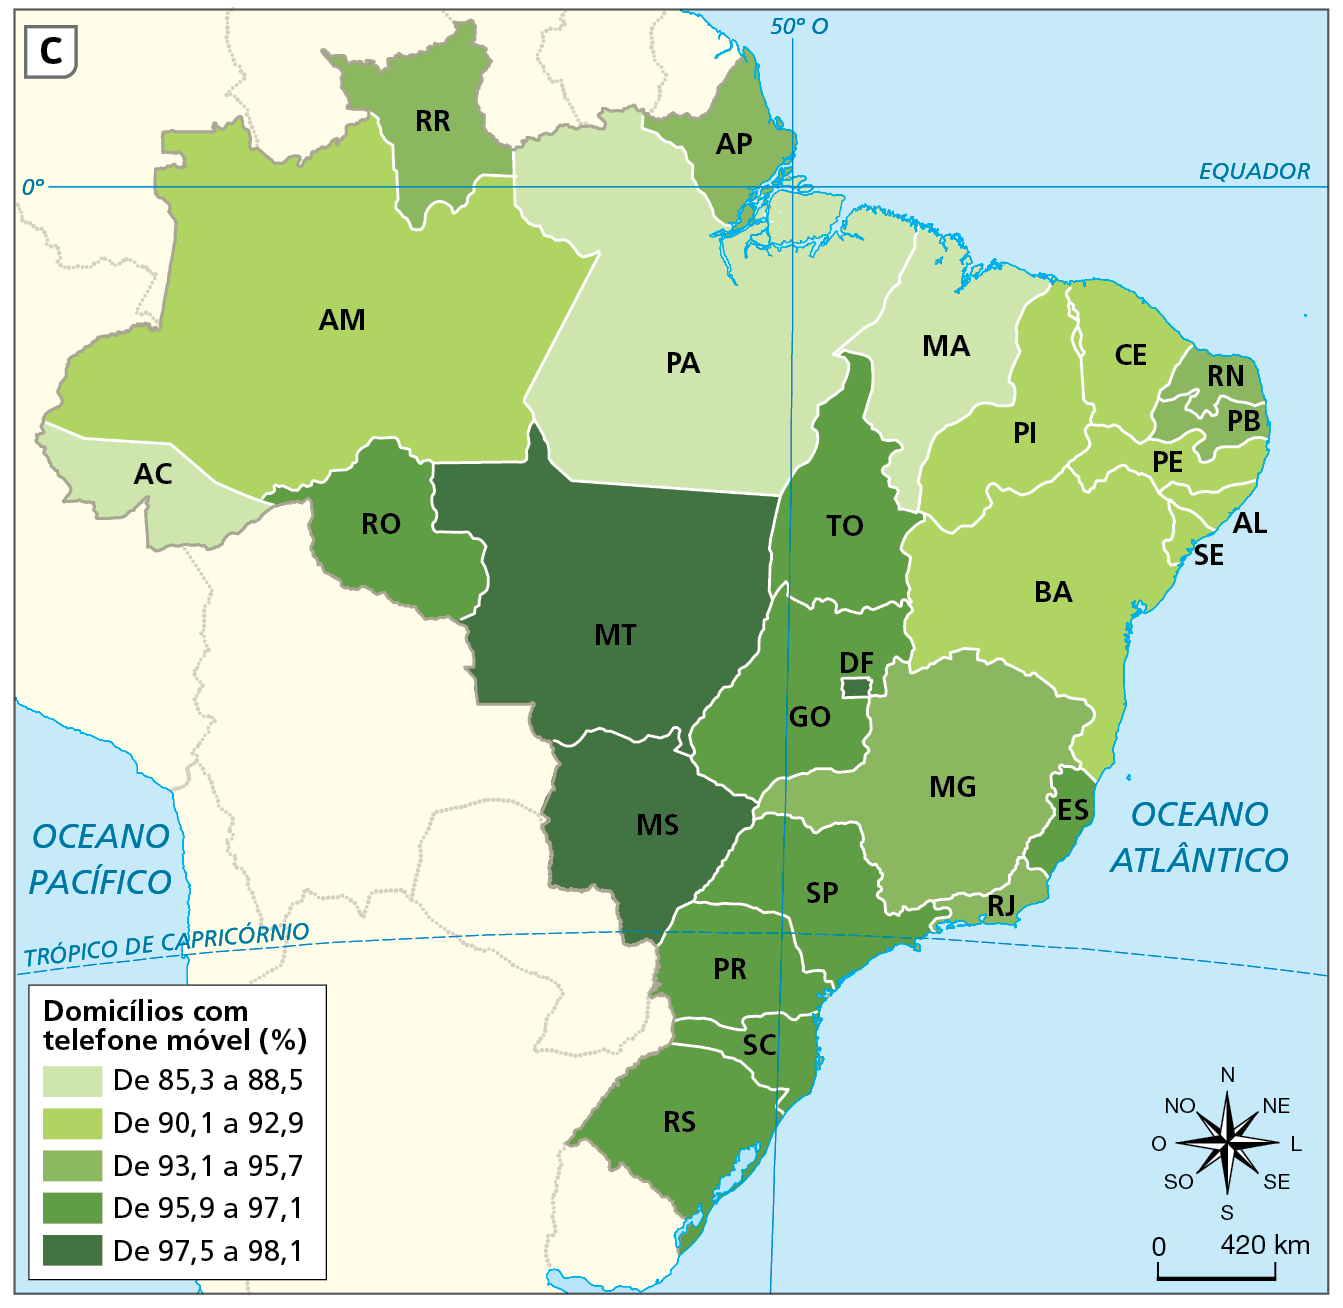 Mapa C. Brasil: domicílios com telefone móvel (em porcentagem) – 2019
Mapa do Brasil mostrando domicílios com telefone móvel nas unidades da federação, indicadas por siglas. Há cinco categorias, diferenciadas por tonalidades de verde. Os tons mais mais claros representam valores menores, e os mais escuros valores maiores.


De 85,3 a 88,5 por cento: Maranhão, Acre e Pará.
De 90,1 a 92,9 por cento: Bahia, Sergipe, Alagoas, Piauí, Pernambuco, Ceará e Amazonas.
De 93,1 a 95,7 por cento: Paraíba, Rio Grande do Norte, Amapá, Roraima, Rio de Janeiro e Minas Gerais. 
De 95,9 a 97,1 por cento: Tocantins, Rondônia, Goiás, São Paulo, Espírito Santo, Rio Grande do Sul, Santa Catarina e Paraná. 
De 97,5 a 98,1 por cento: Distrito Federal, Mato Grosso e Mato Grosso do Sul.
Na parte inferior, rosa dos ventos e escala de 0 a 420 quilômetros.